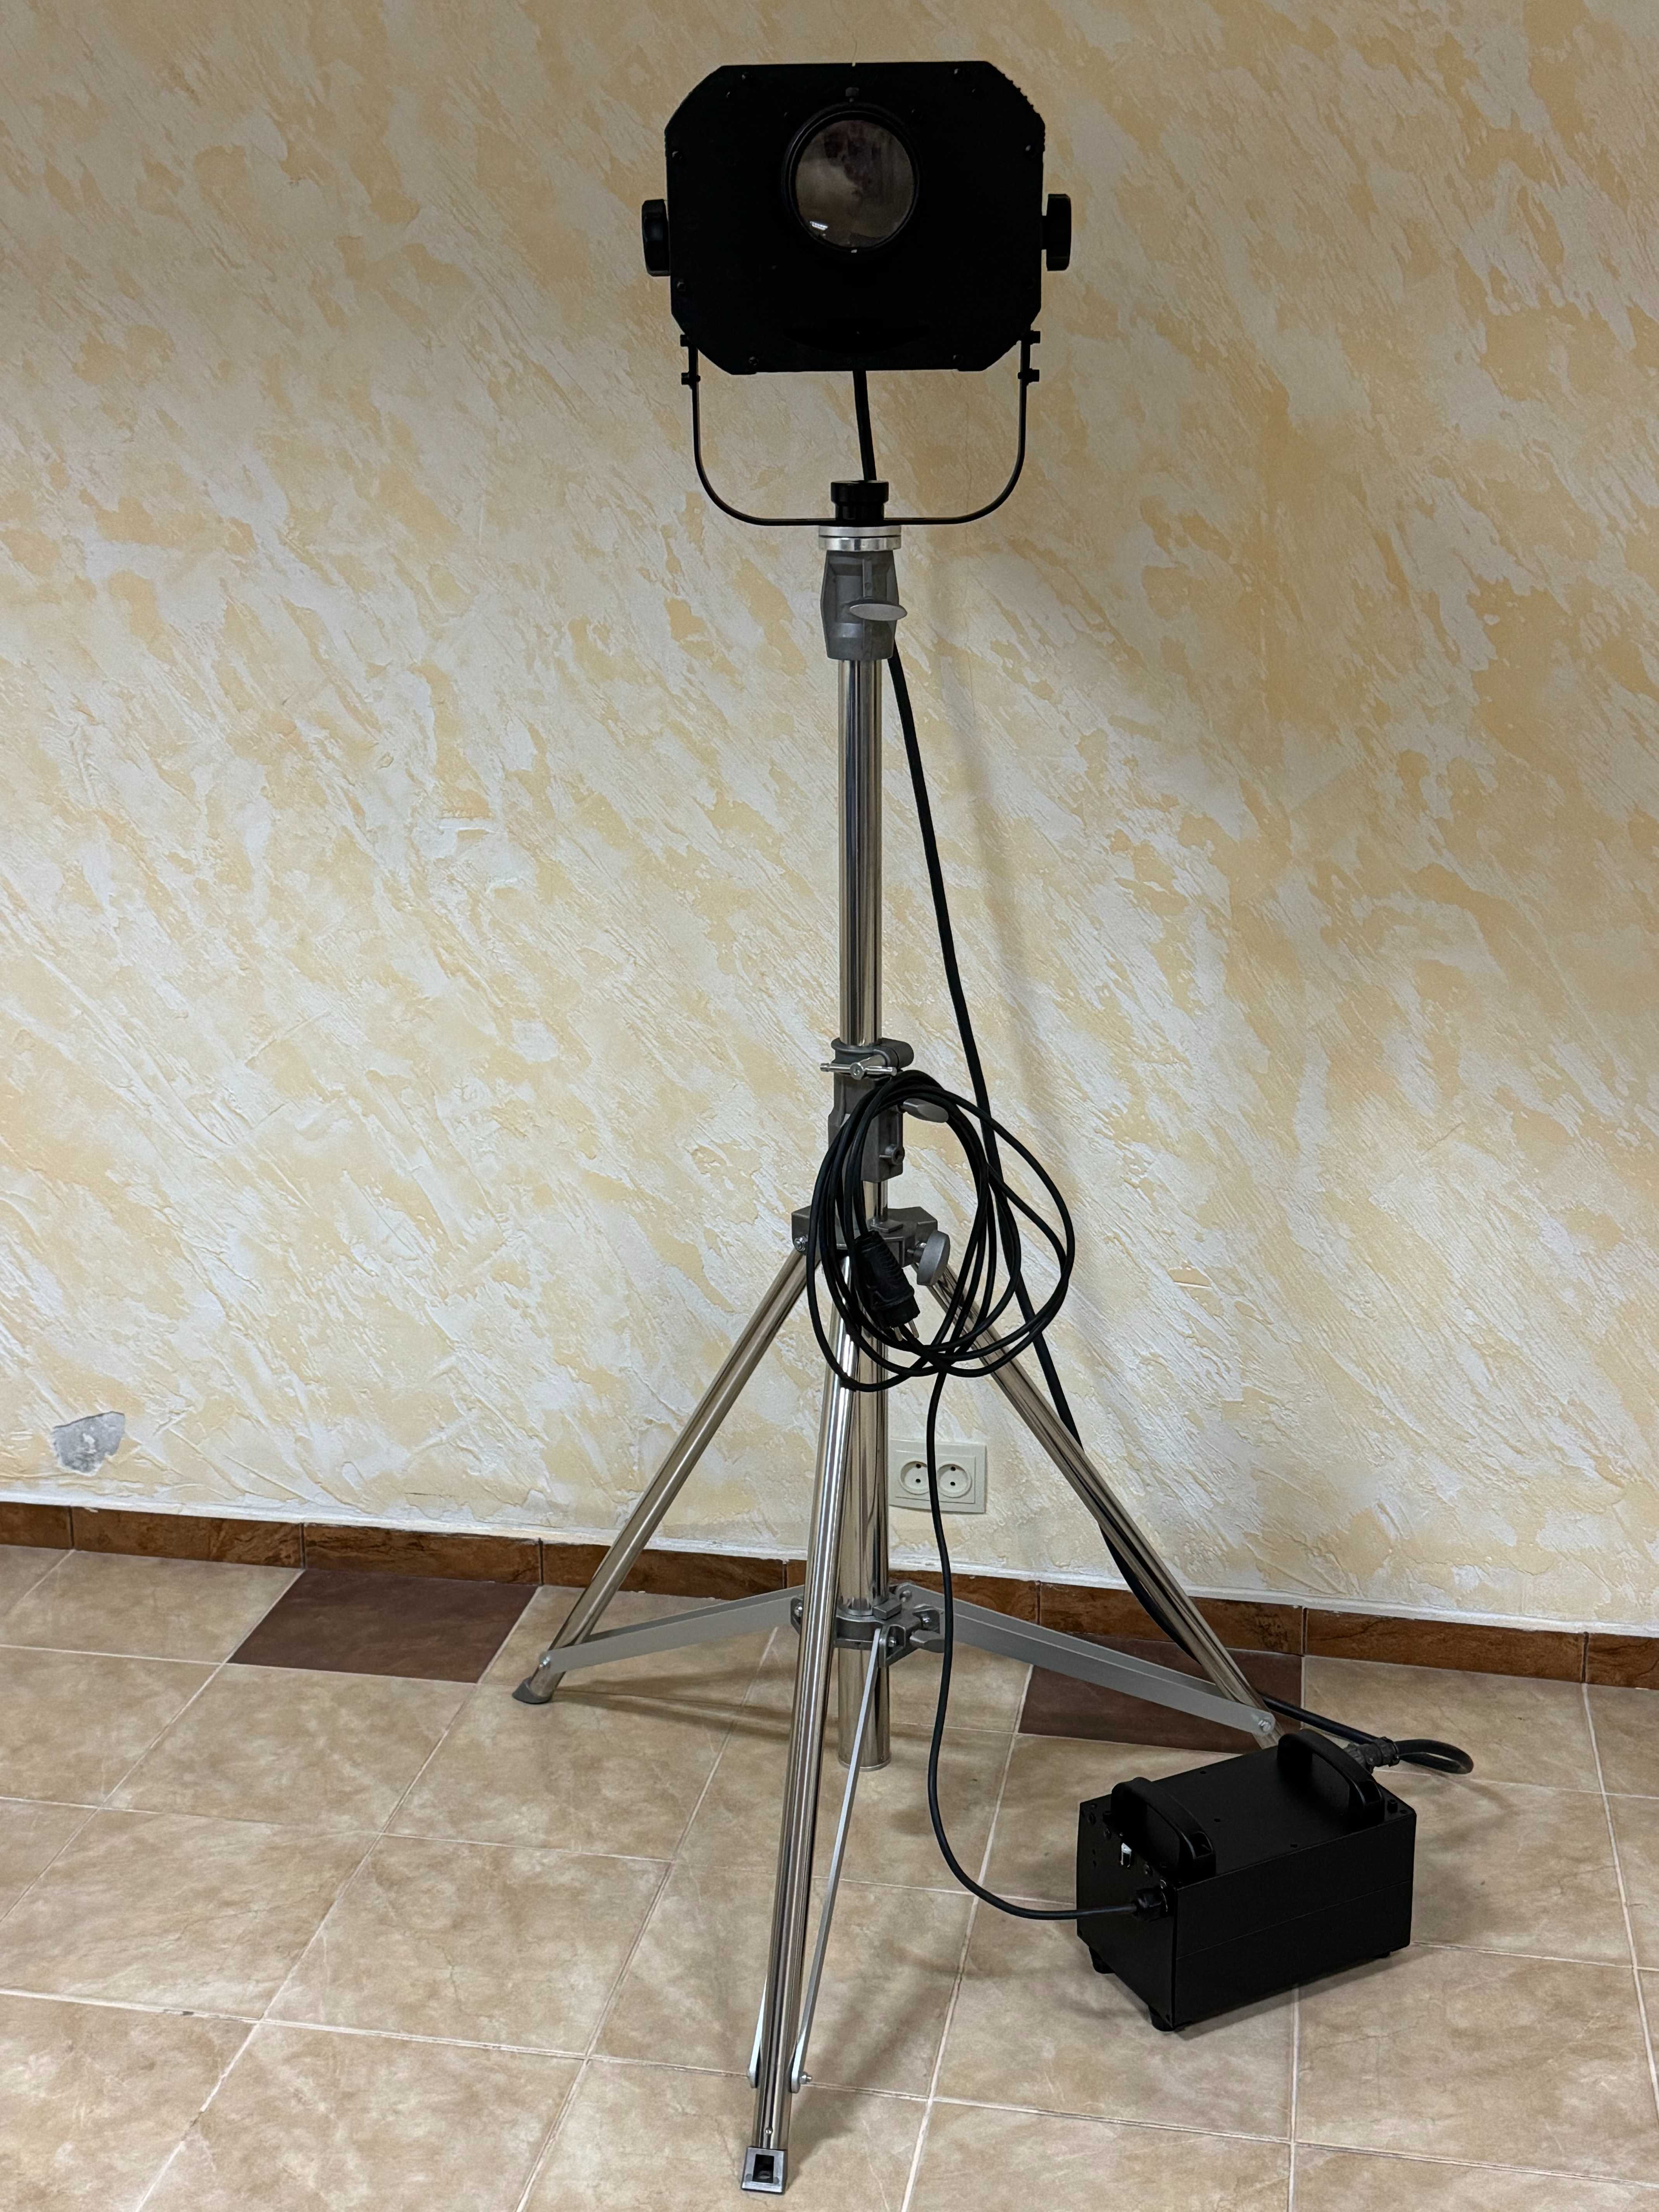 Зенітний прожектор (пошуковий прожектор) для ЗСУ (ППО)